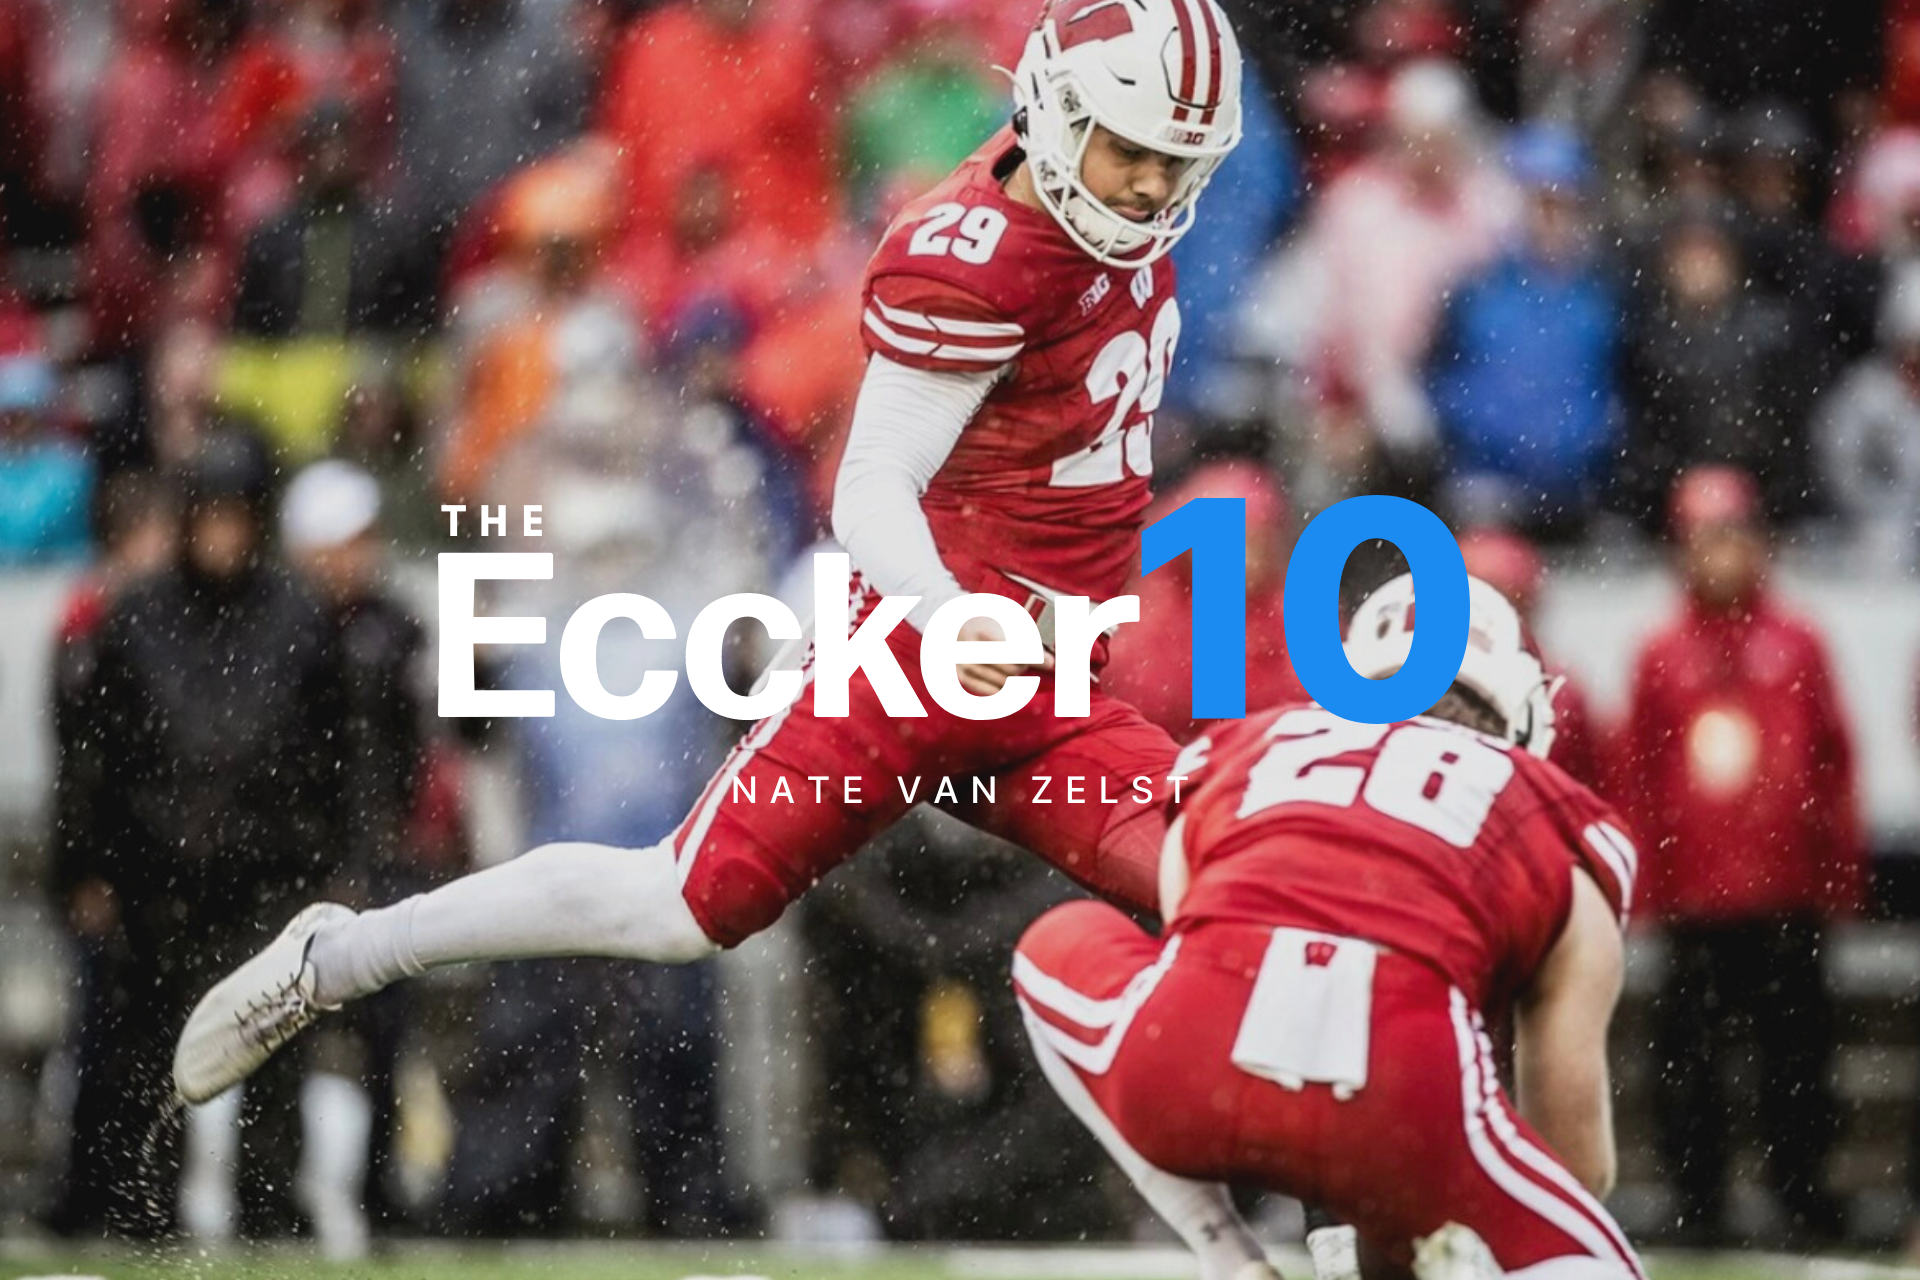 The Eccker 10 - Nate Van Zelst